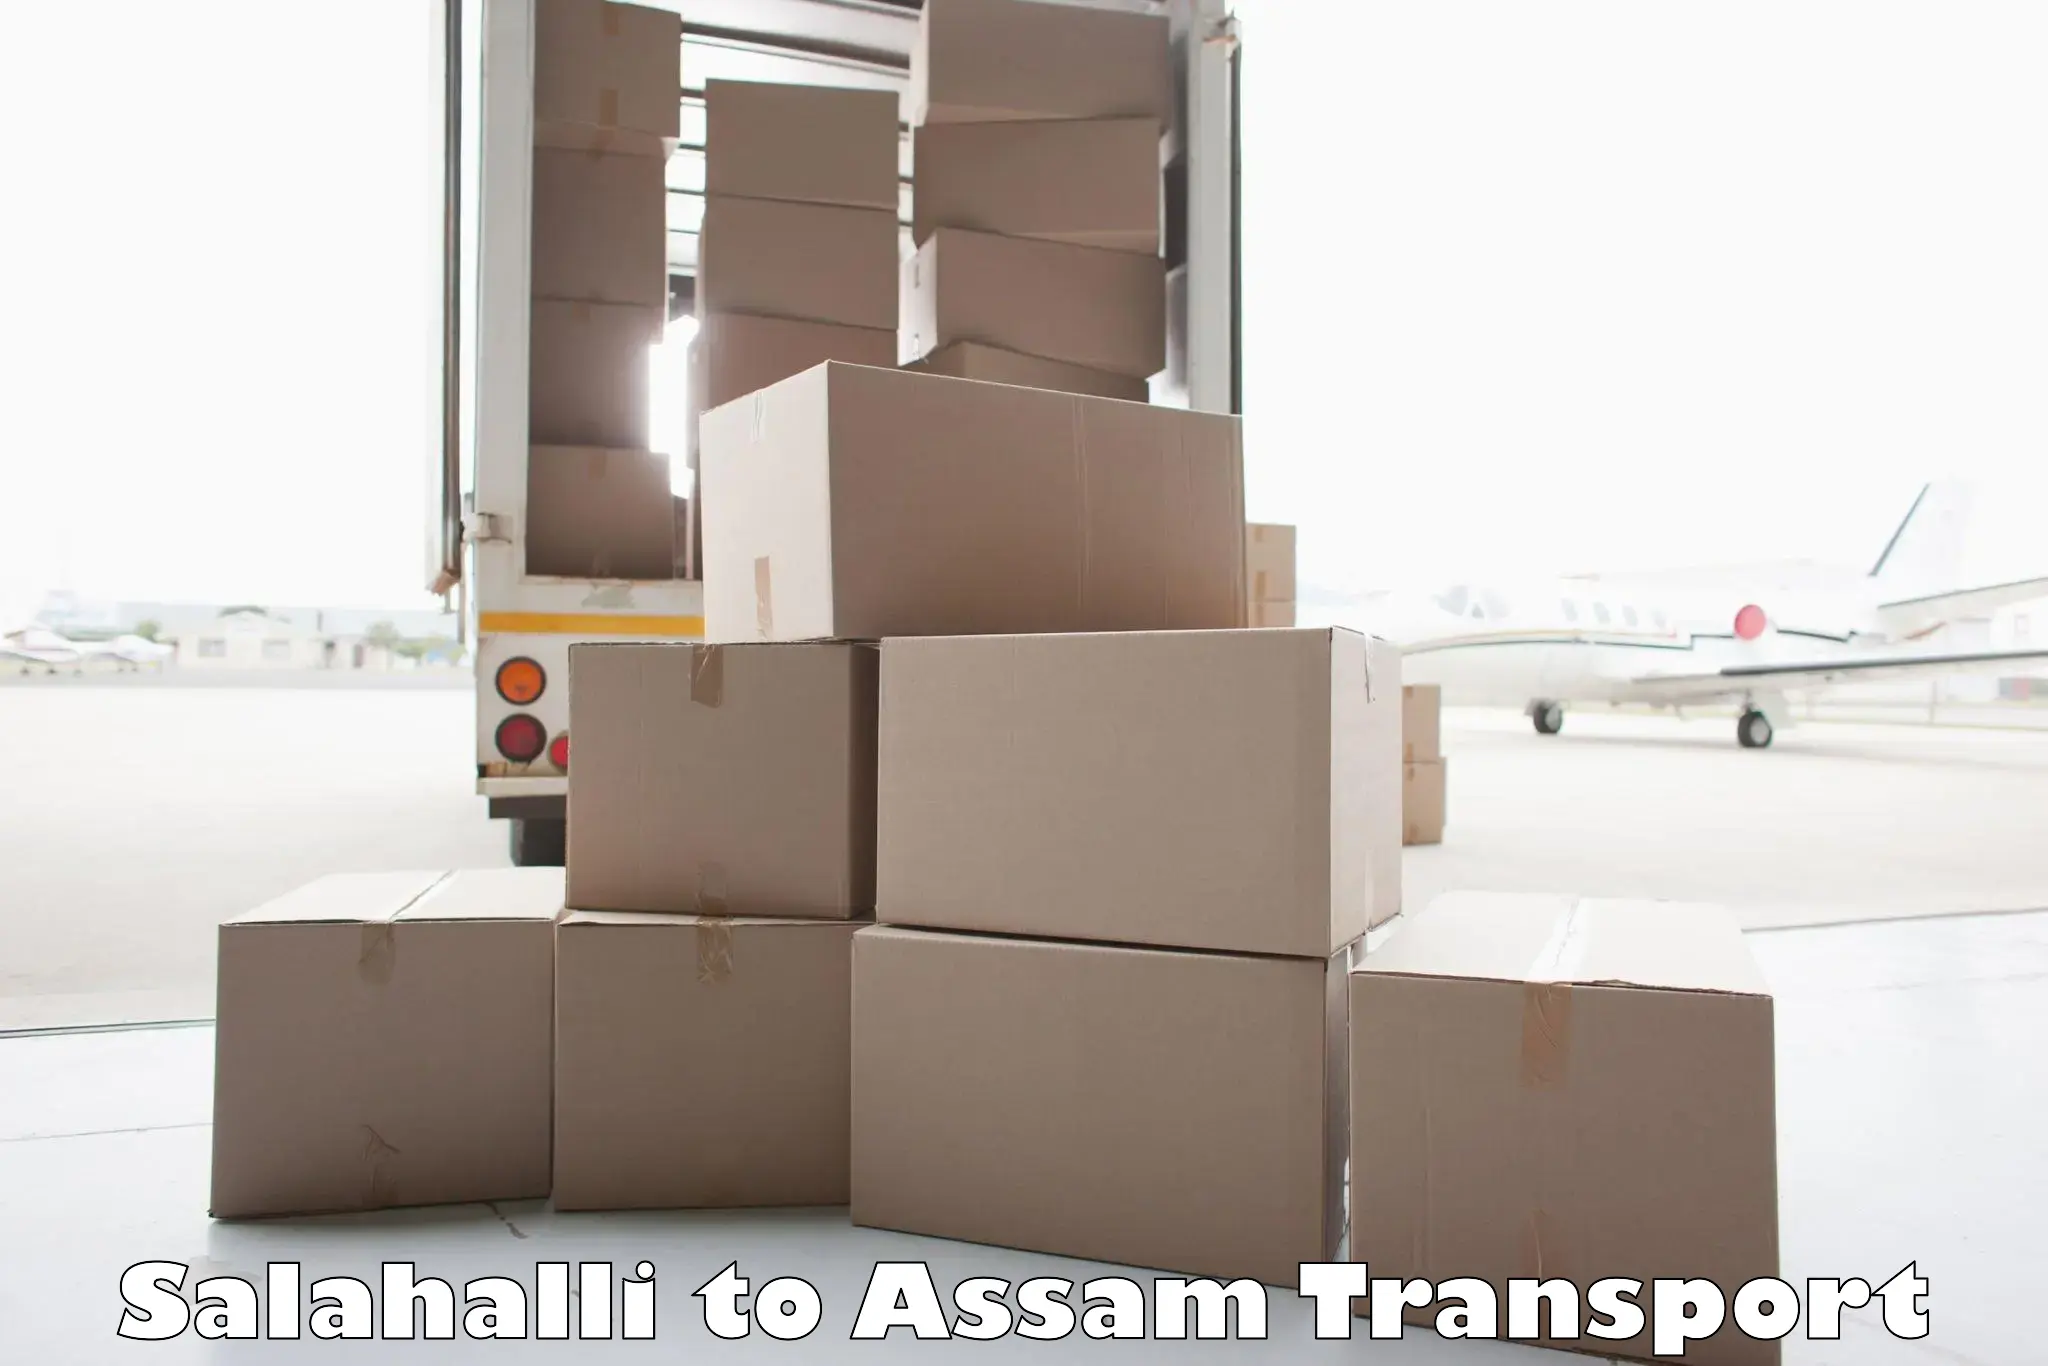 Land transport services Salahalli to Thelamara